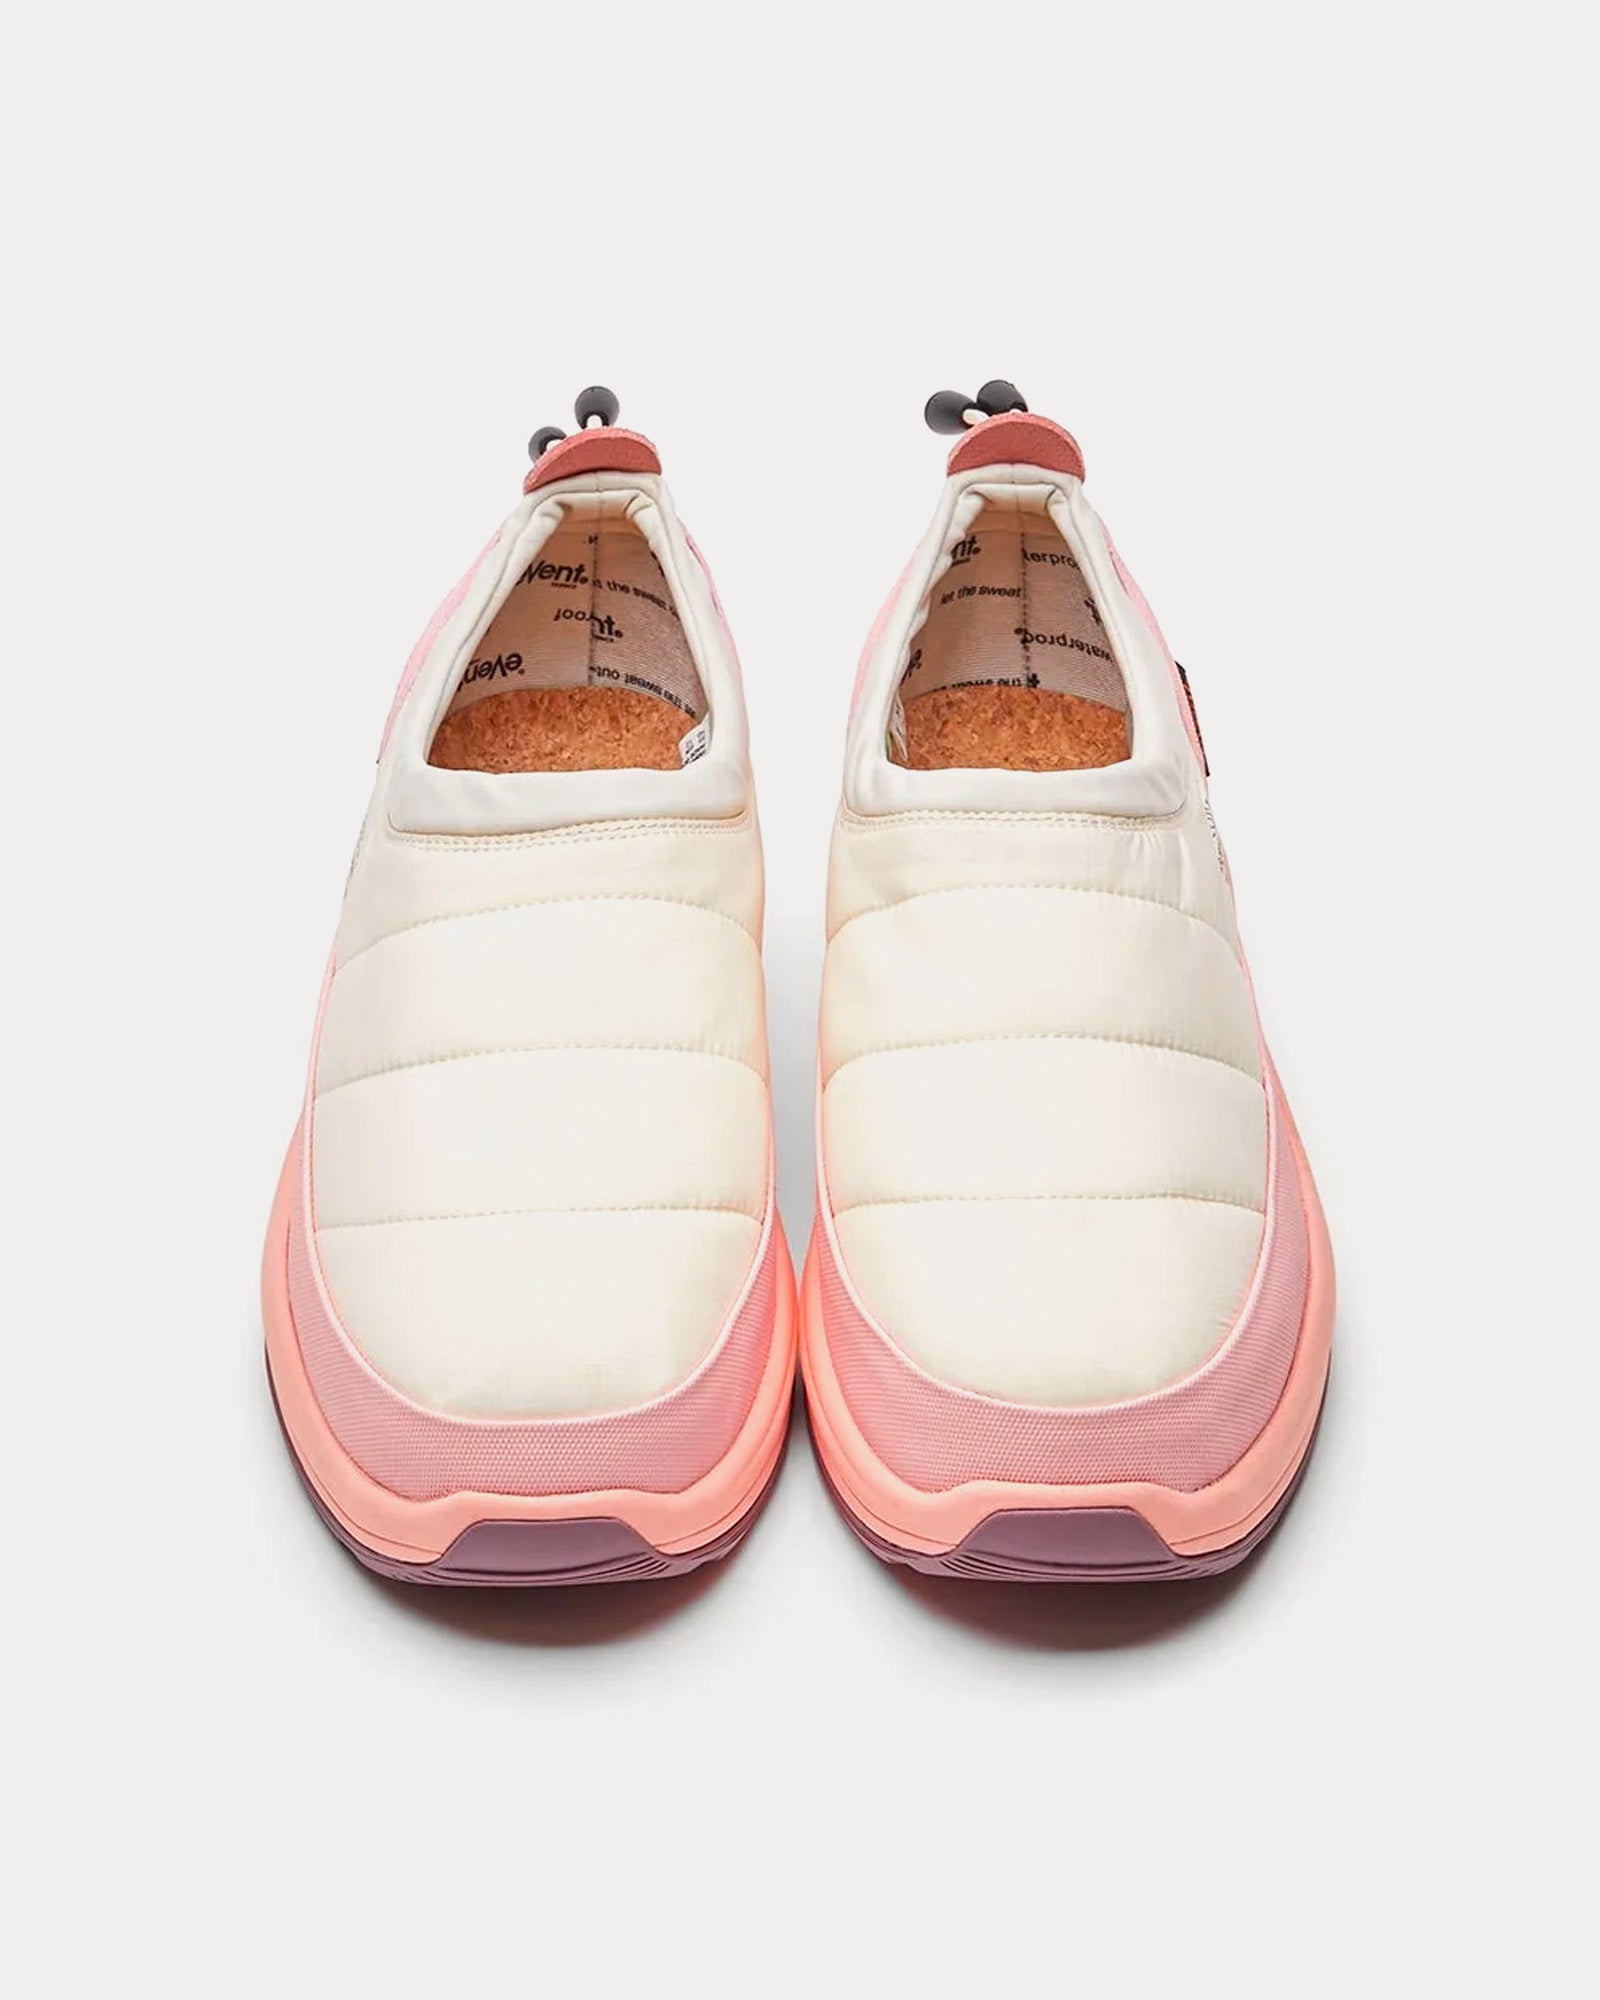 Suicoke - PEPPER-mod-ev Ivory / Pink Slip On Sneakers